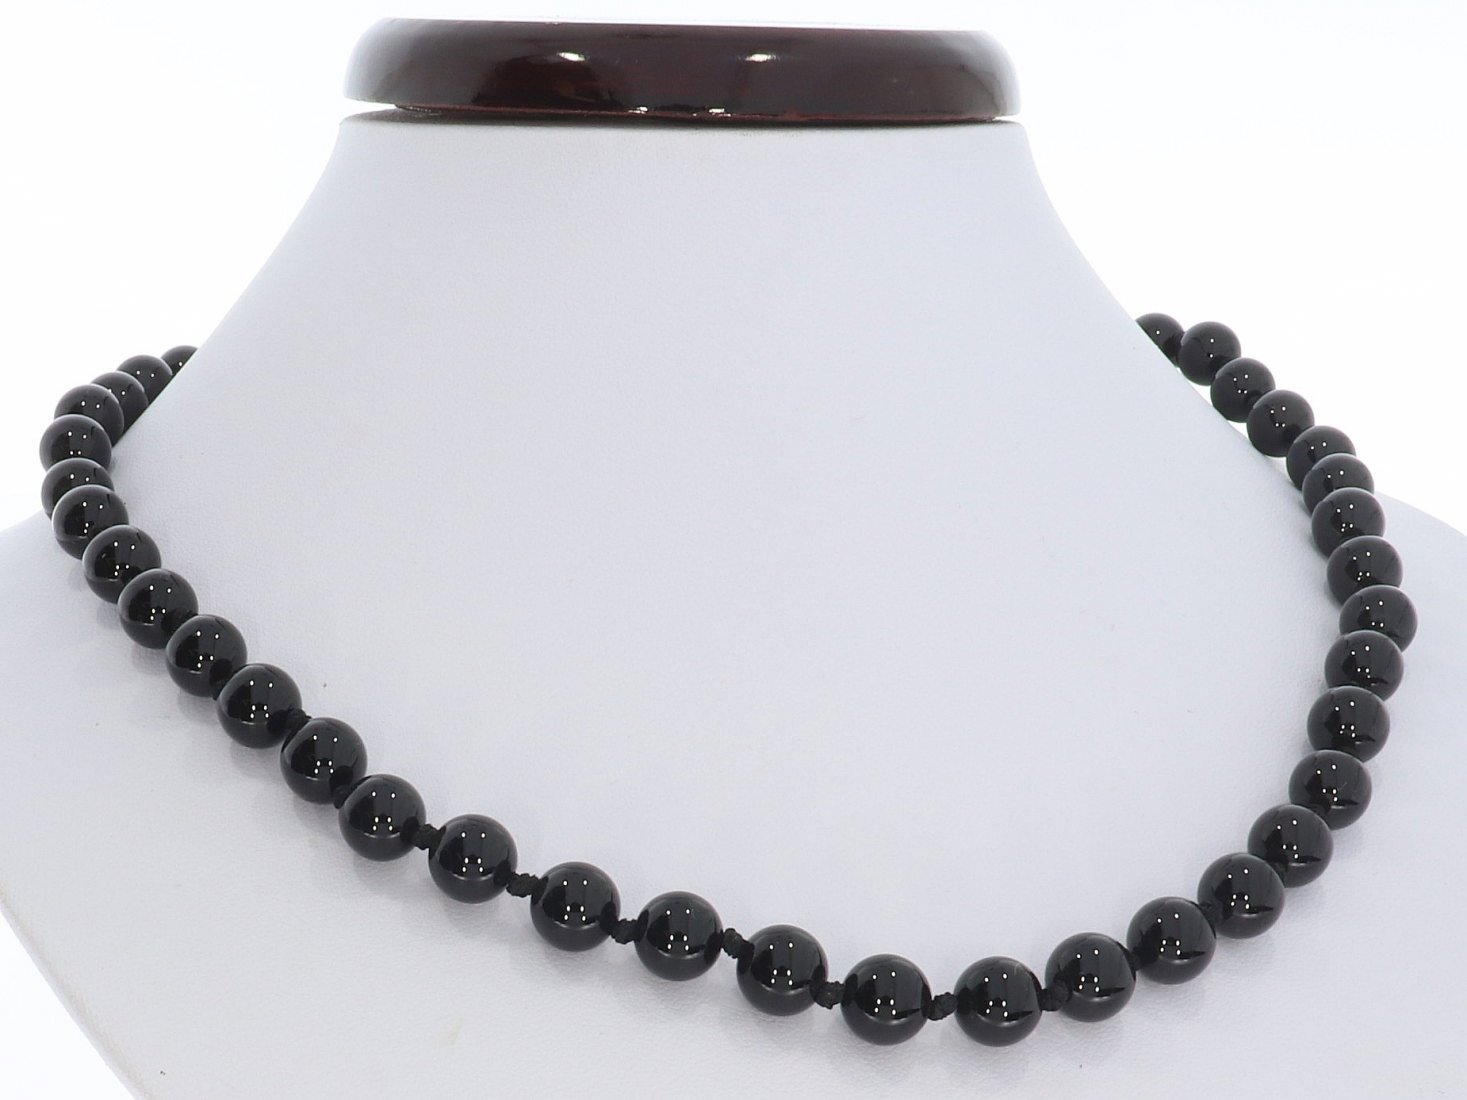 Obsidian schwarz Kugel Edelstein Schmuck Halskette silber farben 8mm/ 48cm KK254